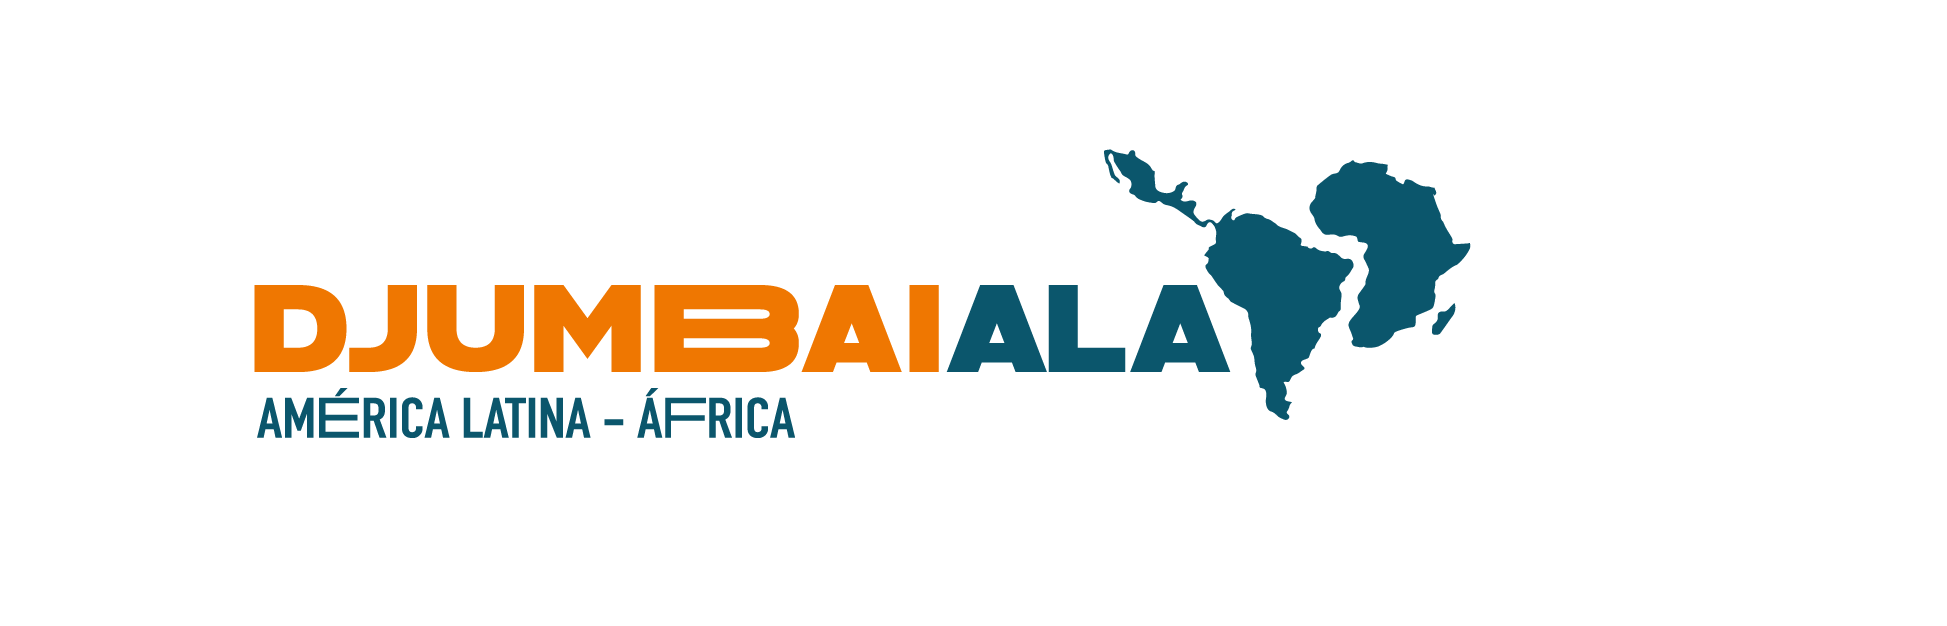 Djumbaiala_logo_final